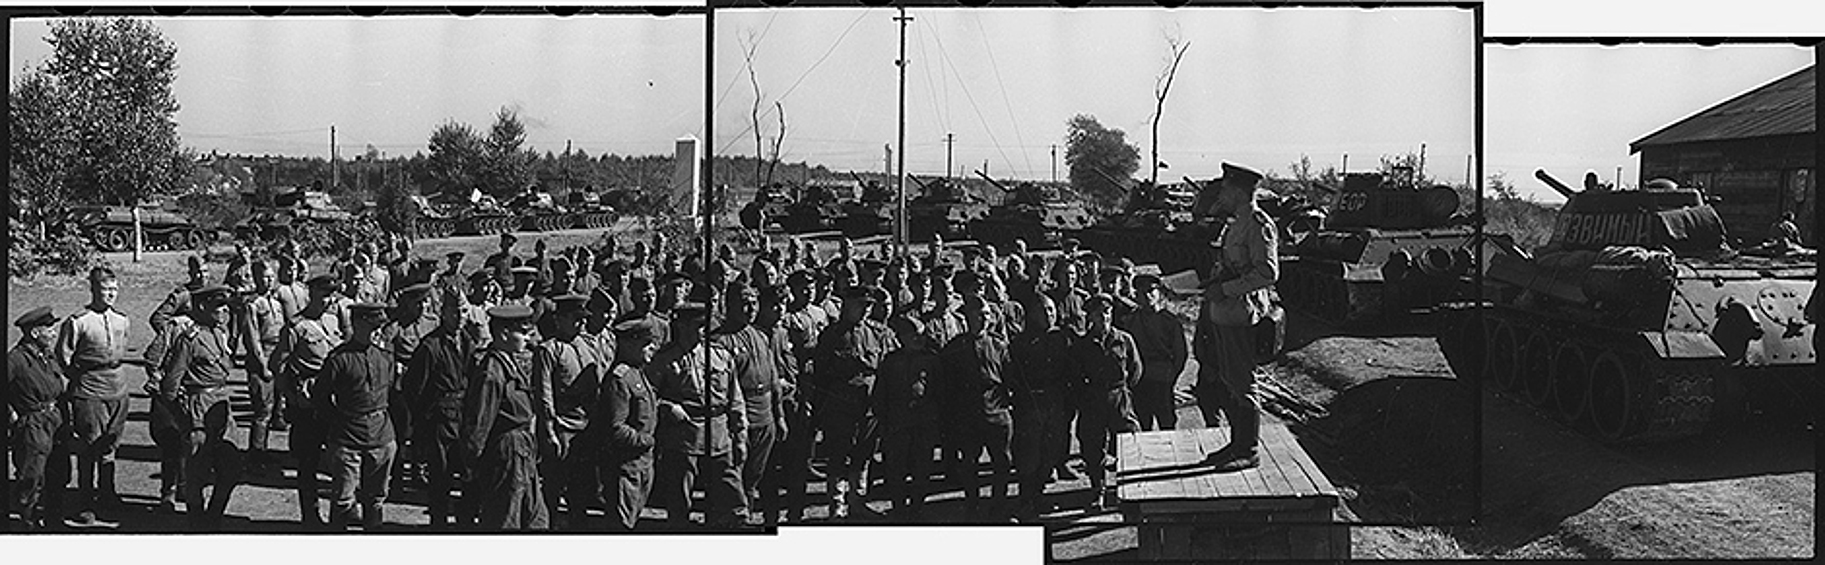 Гвардии полковник Морозов дает указания командирам подразделений перед выходом на марш. Район Харбина, Китай, октябрь 1945 года